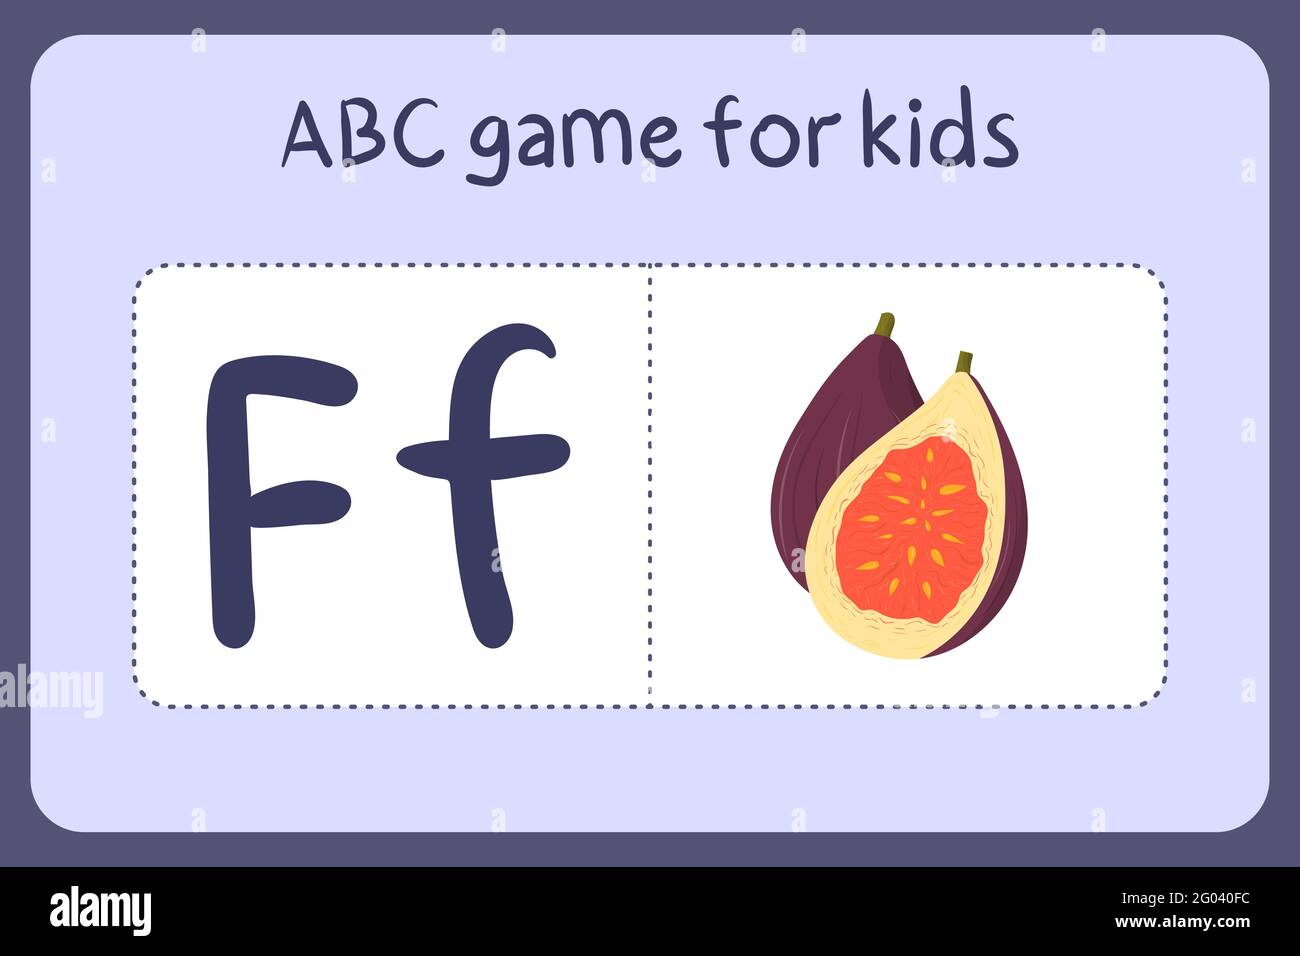 Kind Alphabet Mini-Spiele im Cartoon-Stil mit dem Buchstaben F - Abb. Vektor-Illustration für Spiel-Design - Schneiden und spielen. Lerne abc mit Flash-Karten für Obst und Gemüse. Stock Vektor